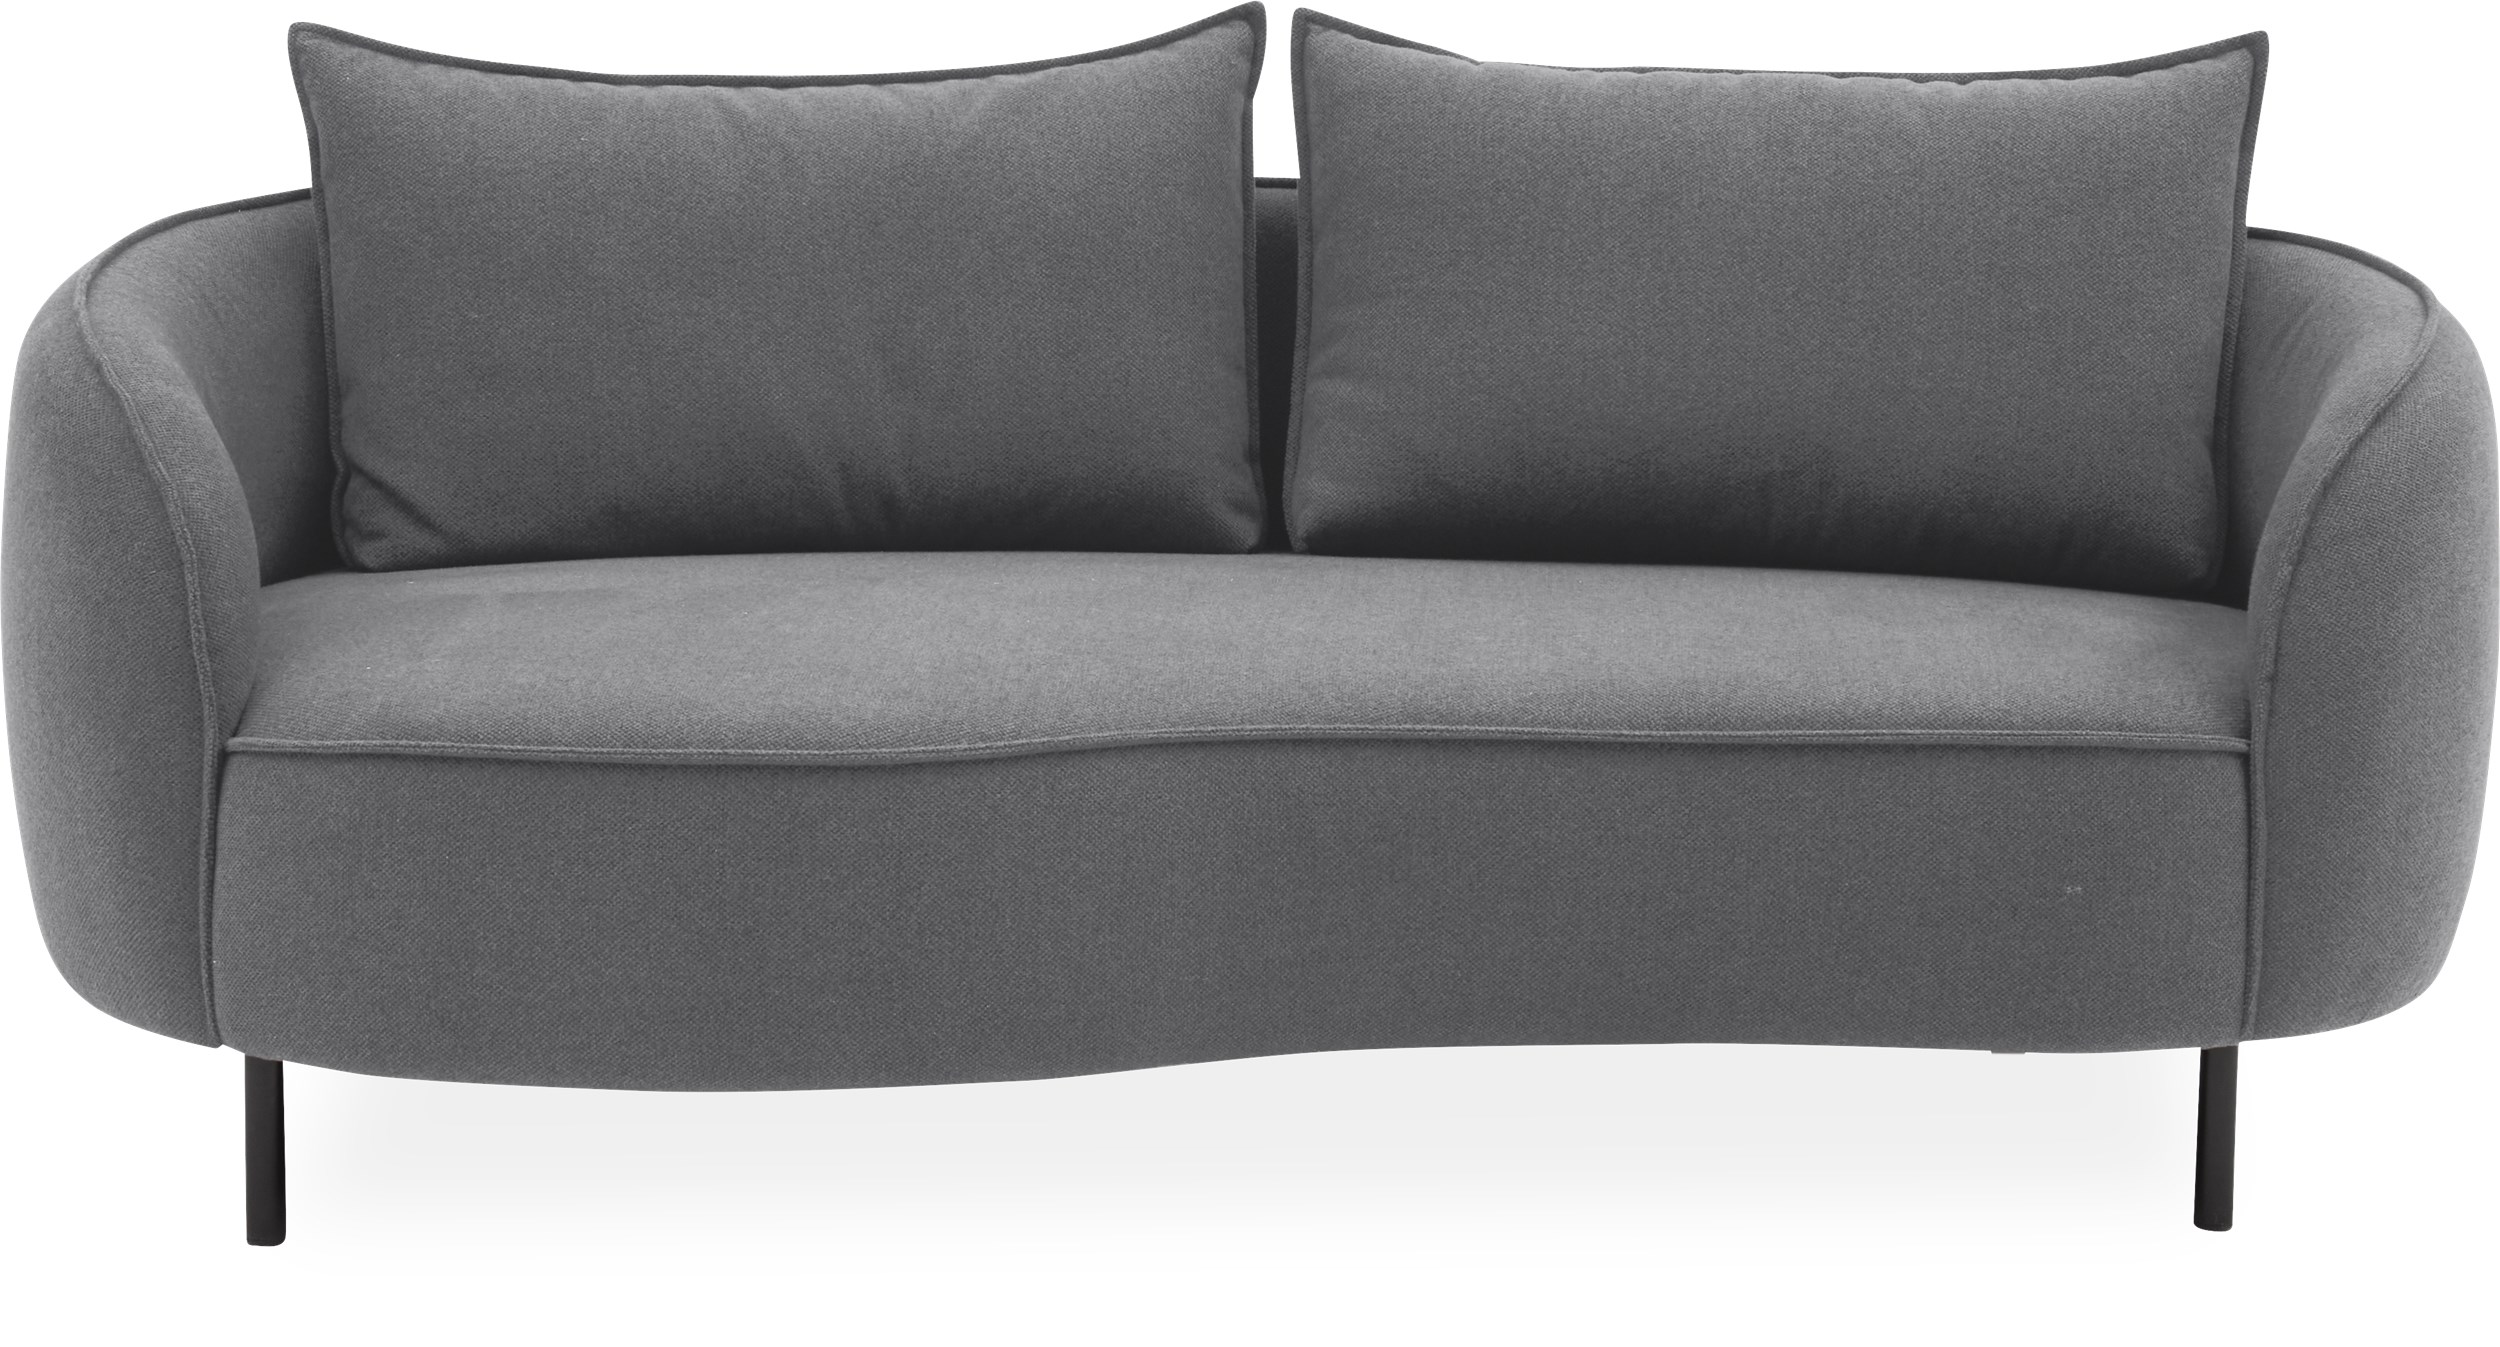 Heim 2½ sits Soffa - Denno 1261 Deep Grey textil och ben i svartlackerad metall